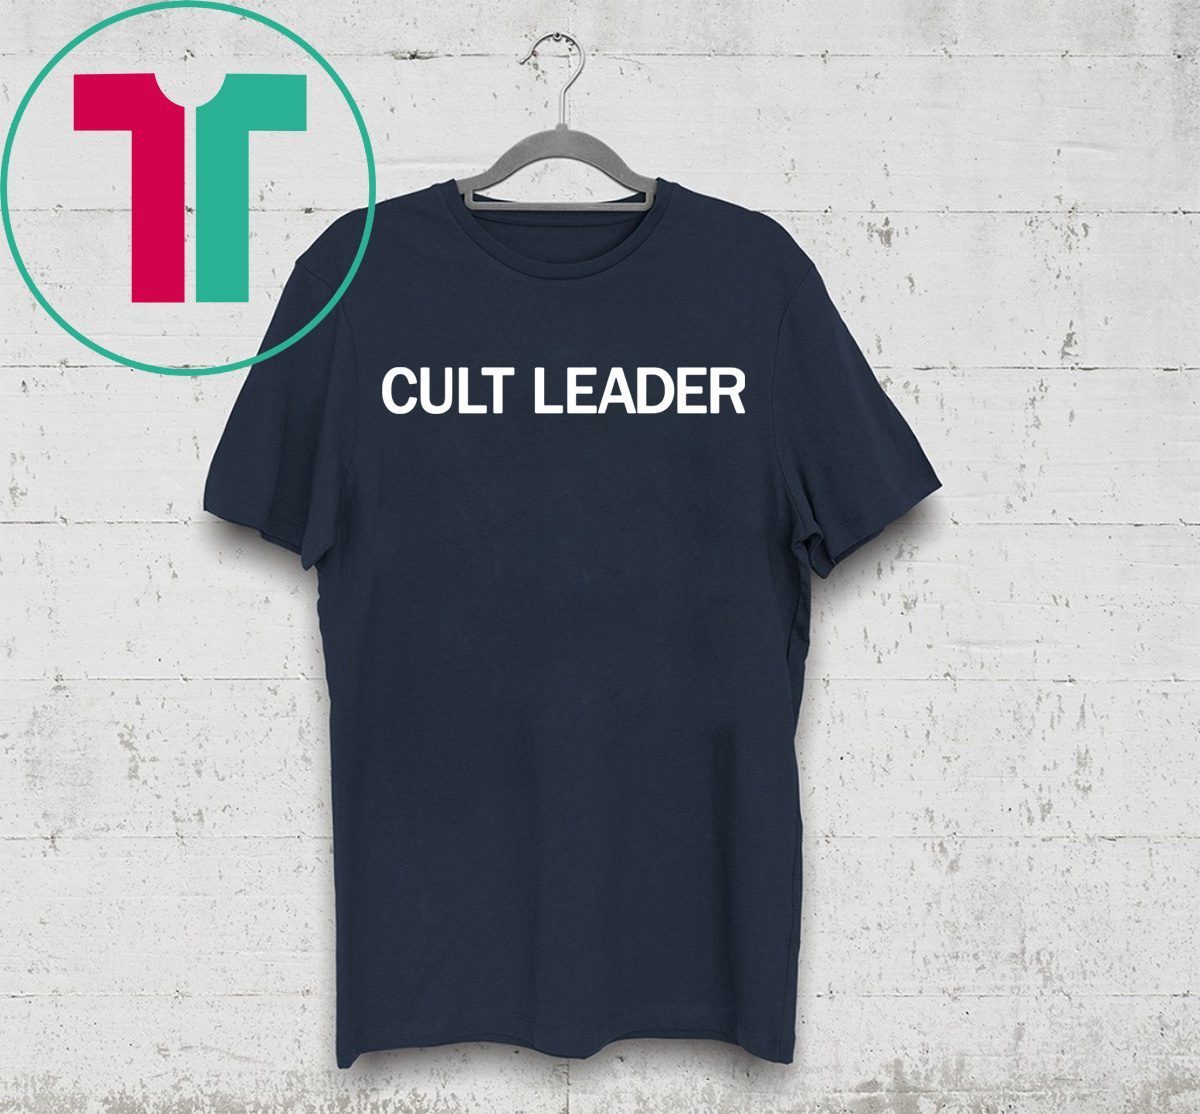 Cult leader t-shirt Cult Leader Tee - OrderQuilt.com